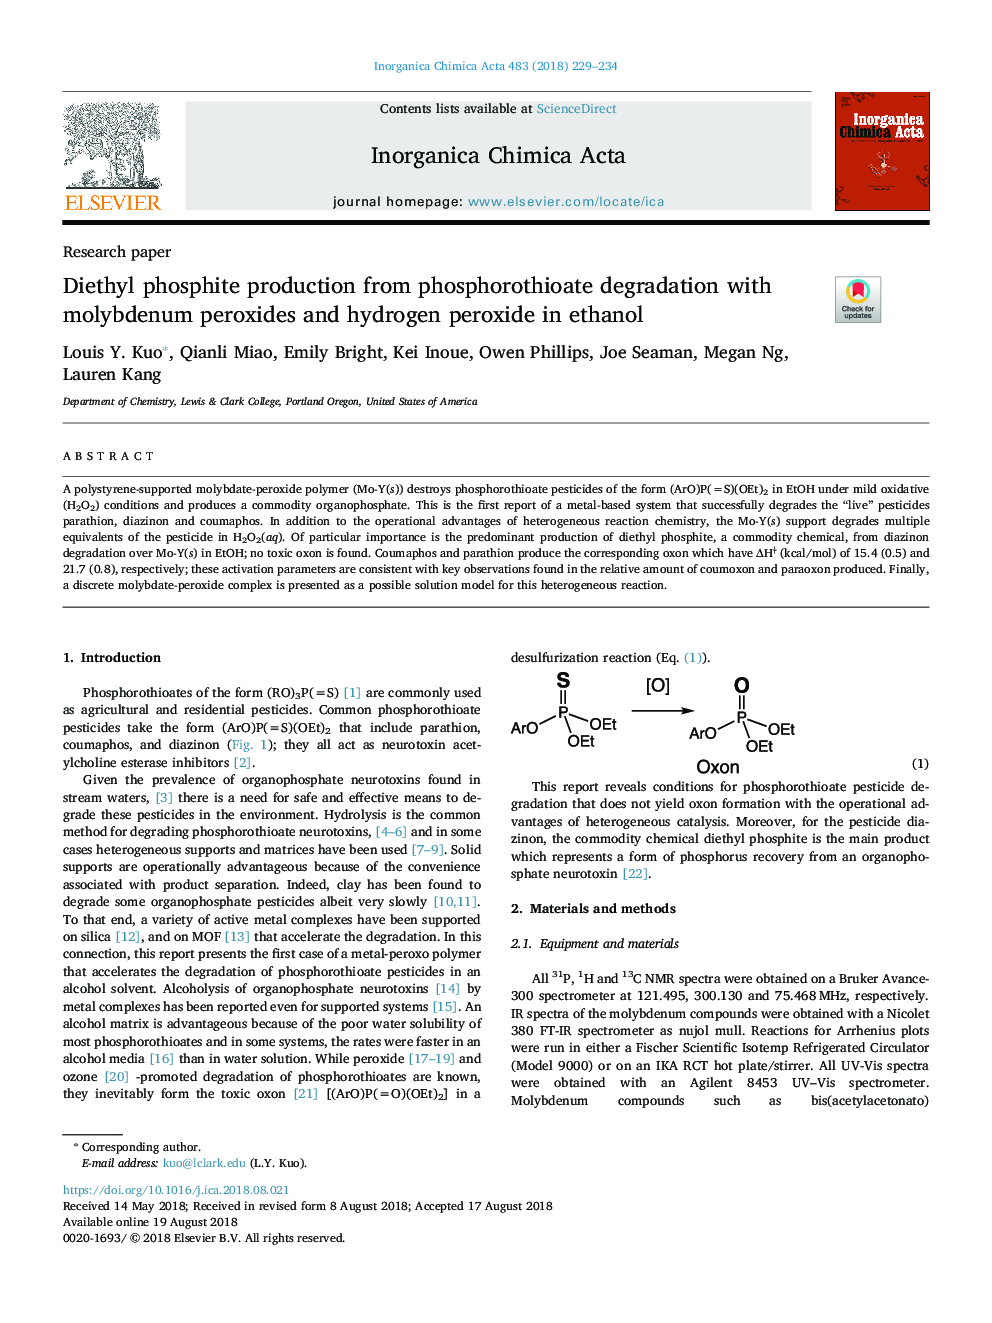 تولید دی اتیل فسفیت از تخریب فسفاتوتیو با پراکسید مولیبدن و پراکسید هیدروژن در اتانول